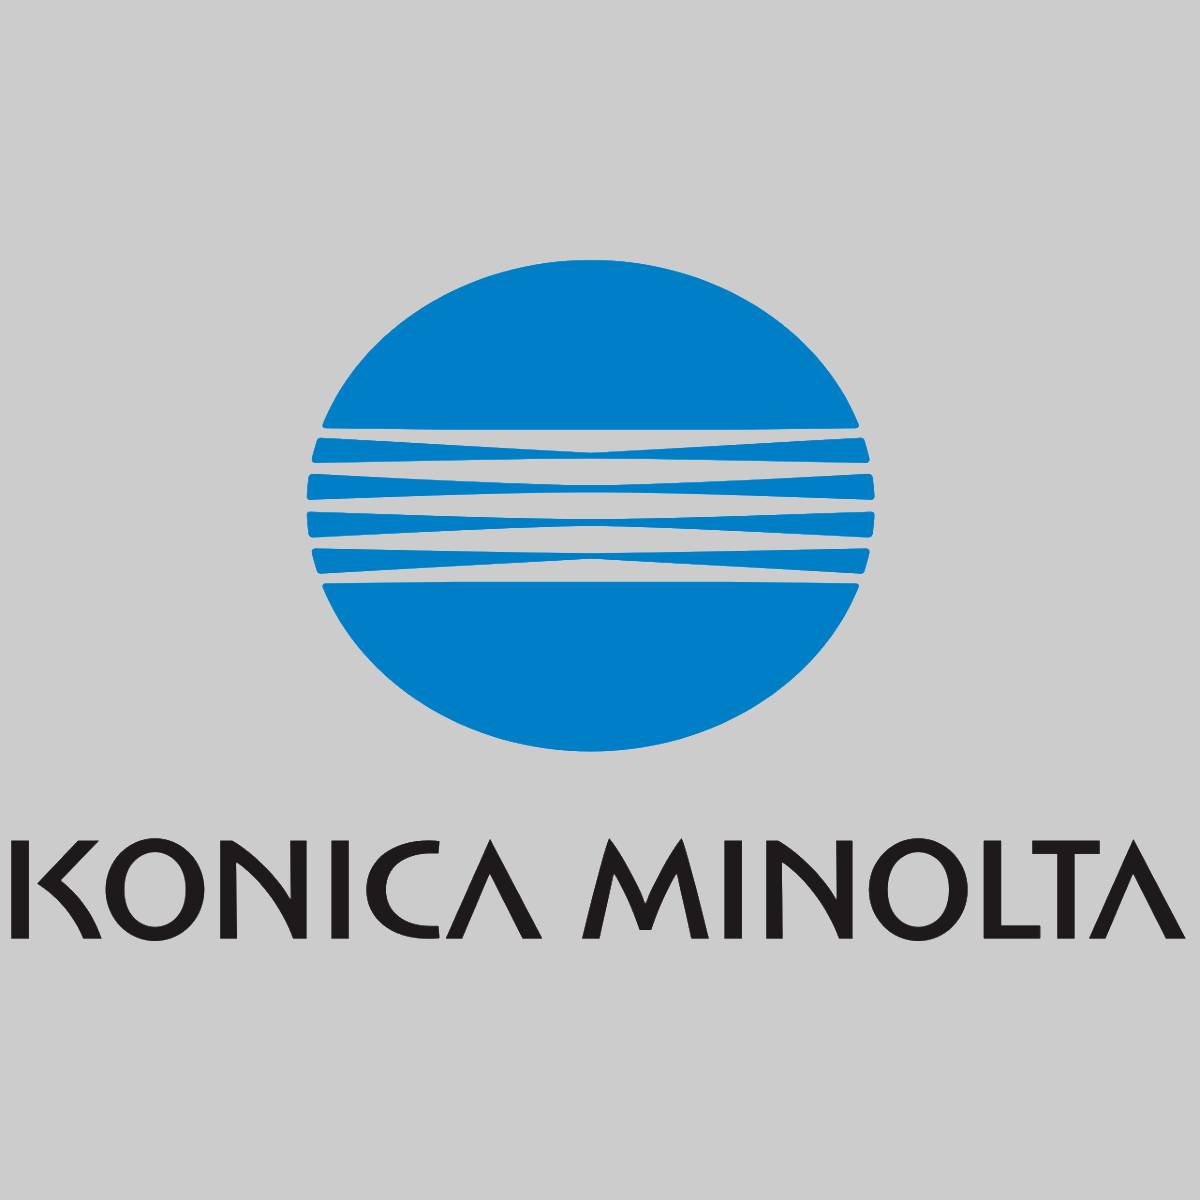 "Originele Konica Minolta Fuser Cleaning Web A4EW731400 voor Bizhub PRO 951 NIEUW